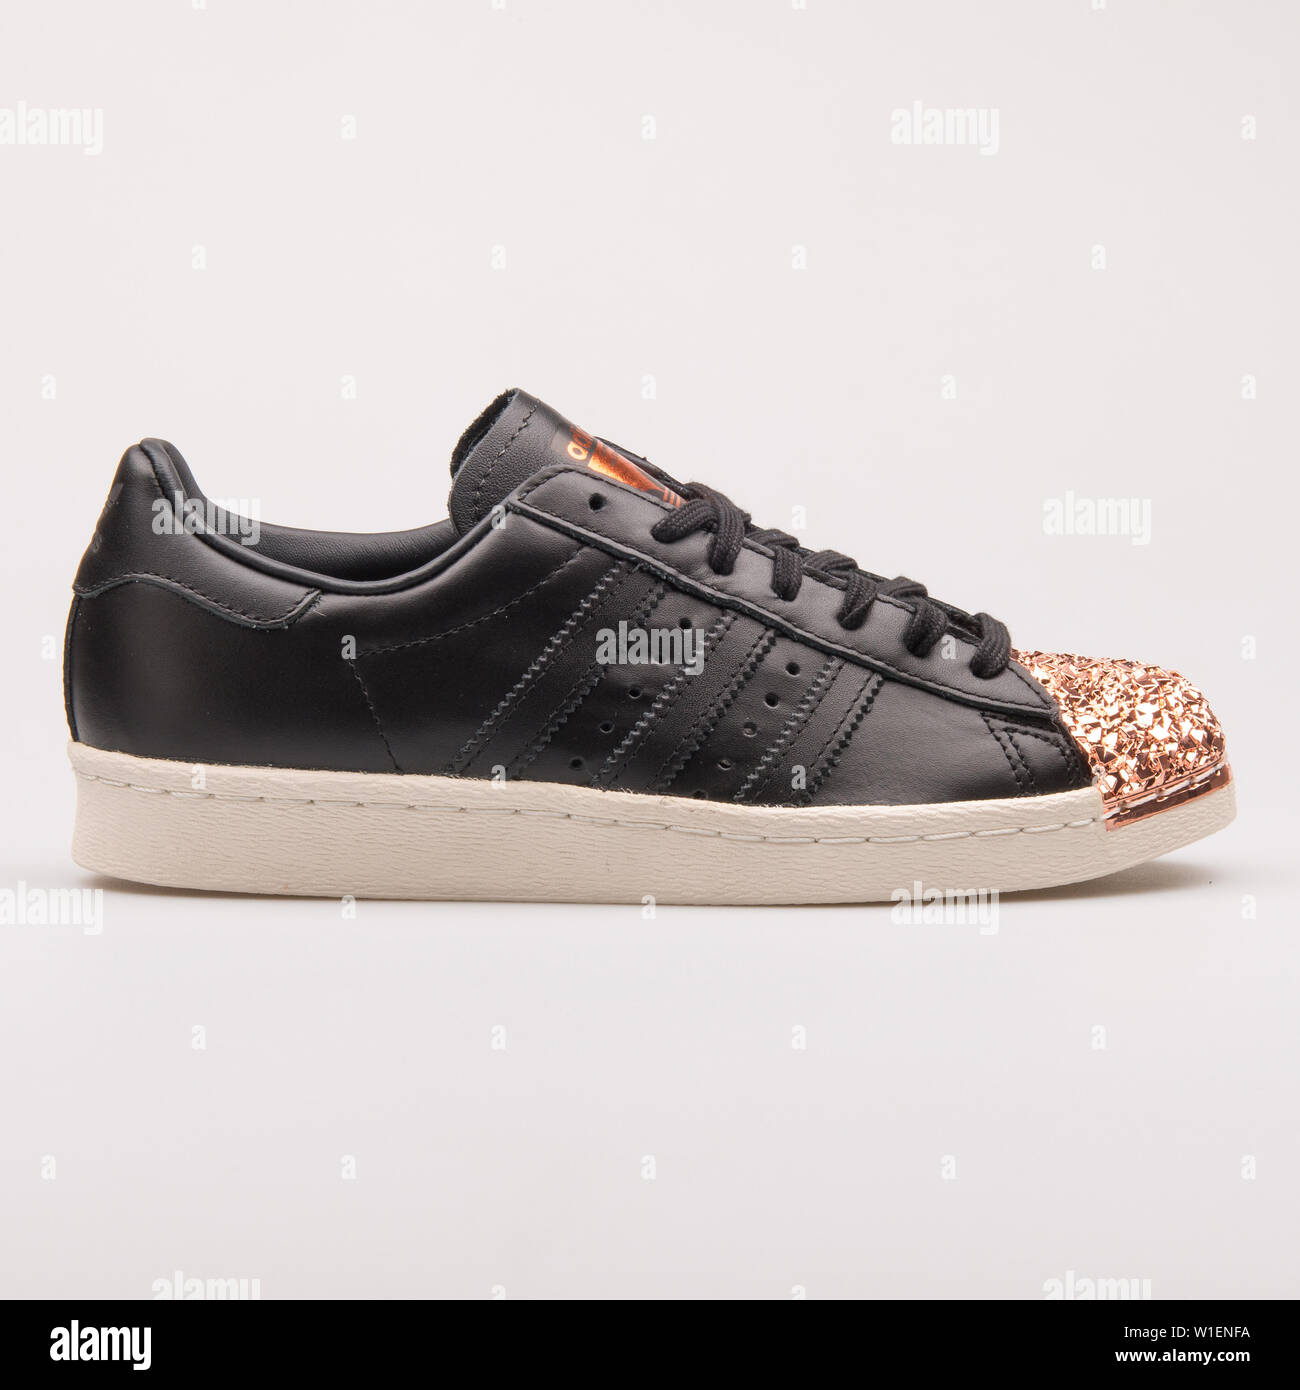 Austria - Agosto 30, 2017: Adidas Superstar 80s Toe de metal negro y zapatillas de cobre blanco Fotografía de stock - Alamy